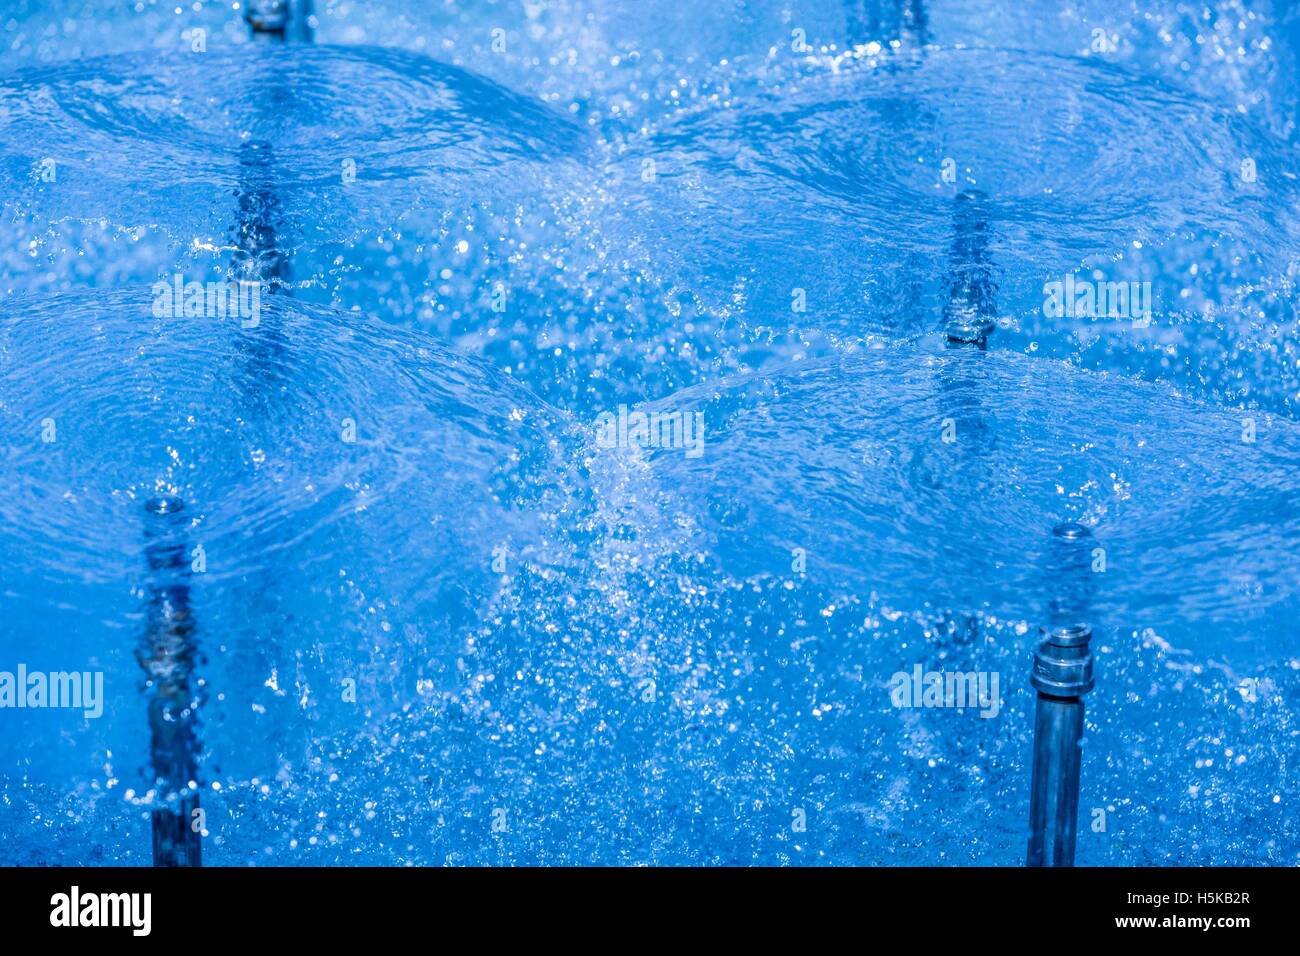 Un écran circulaire de jets d'eau en spray bleu fontaine Banque D'Images